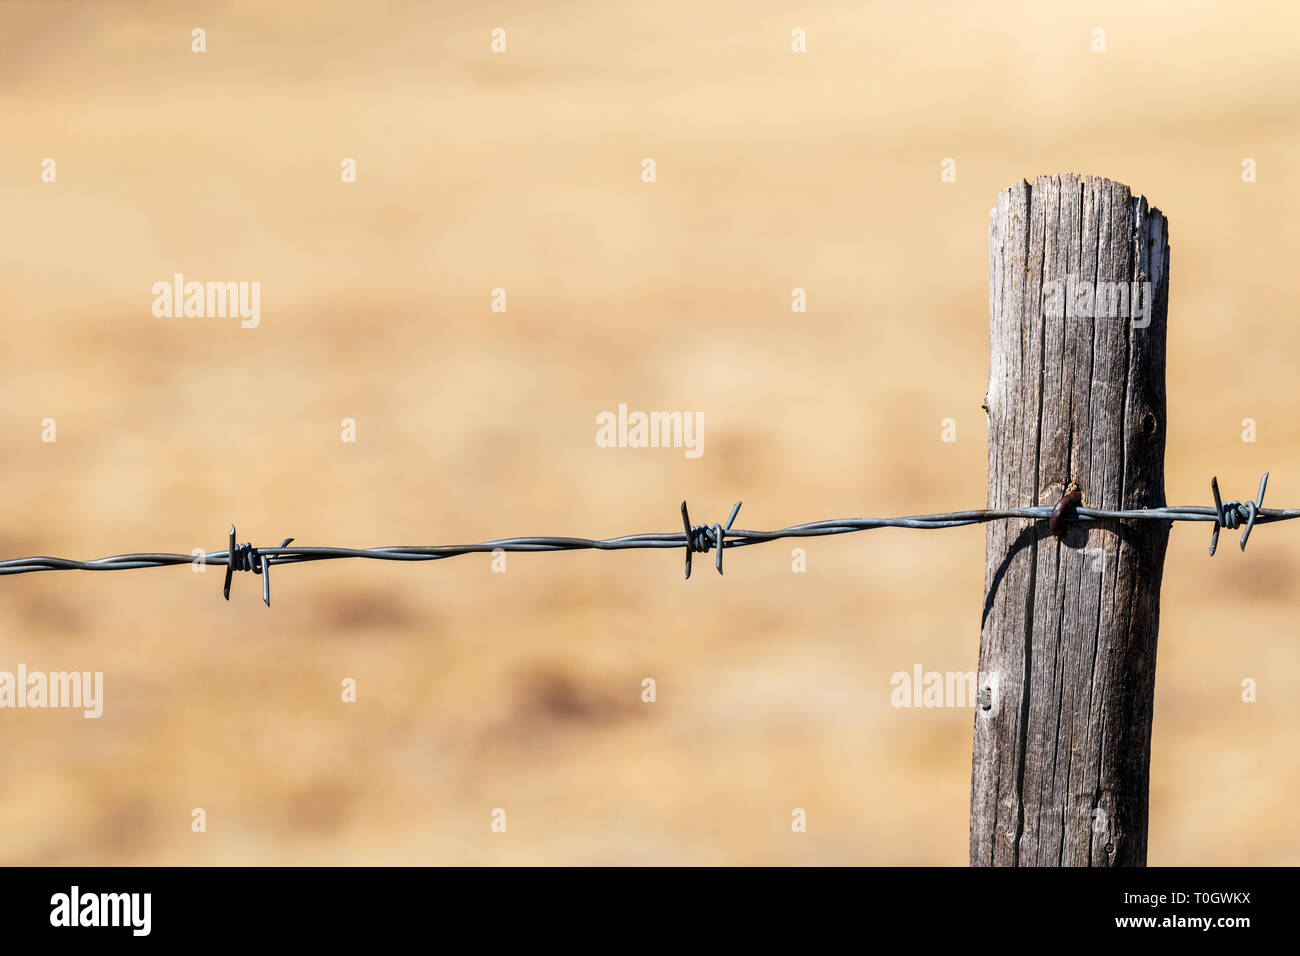 Close-up di filo spinato e recinzione di legno post; Ranch in Colorado centrale; USA Foto Stock